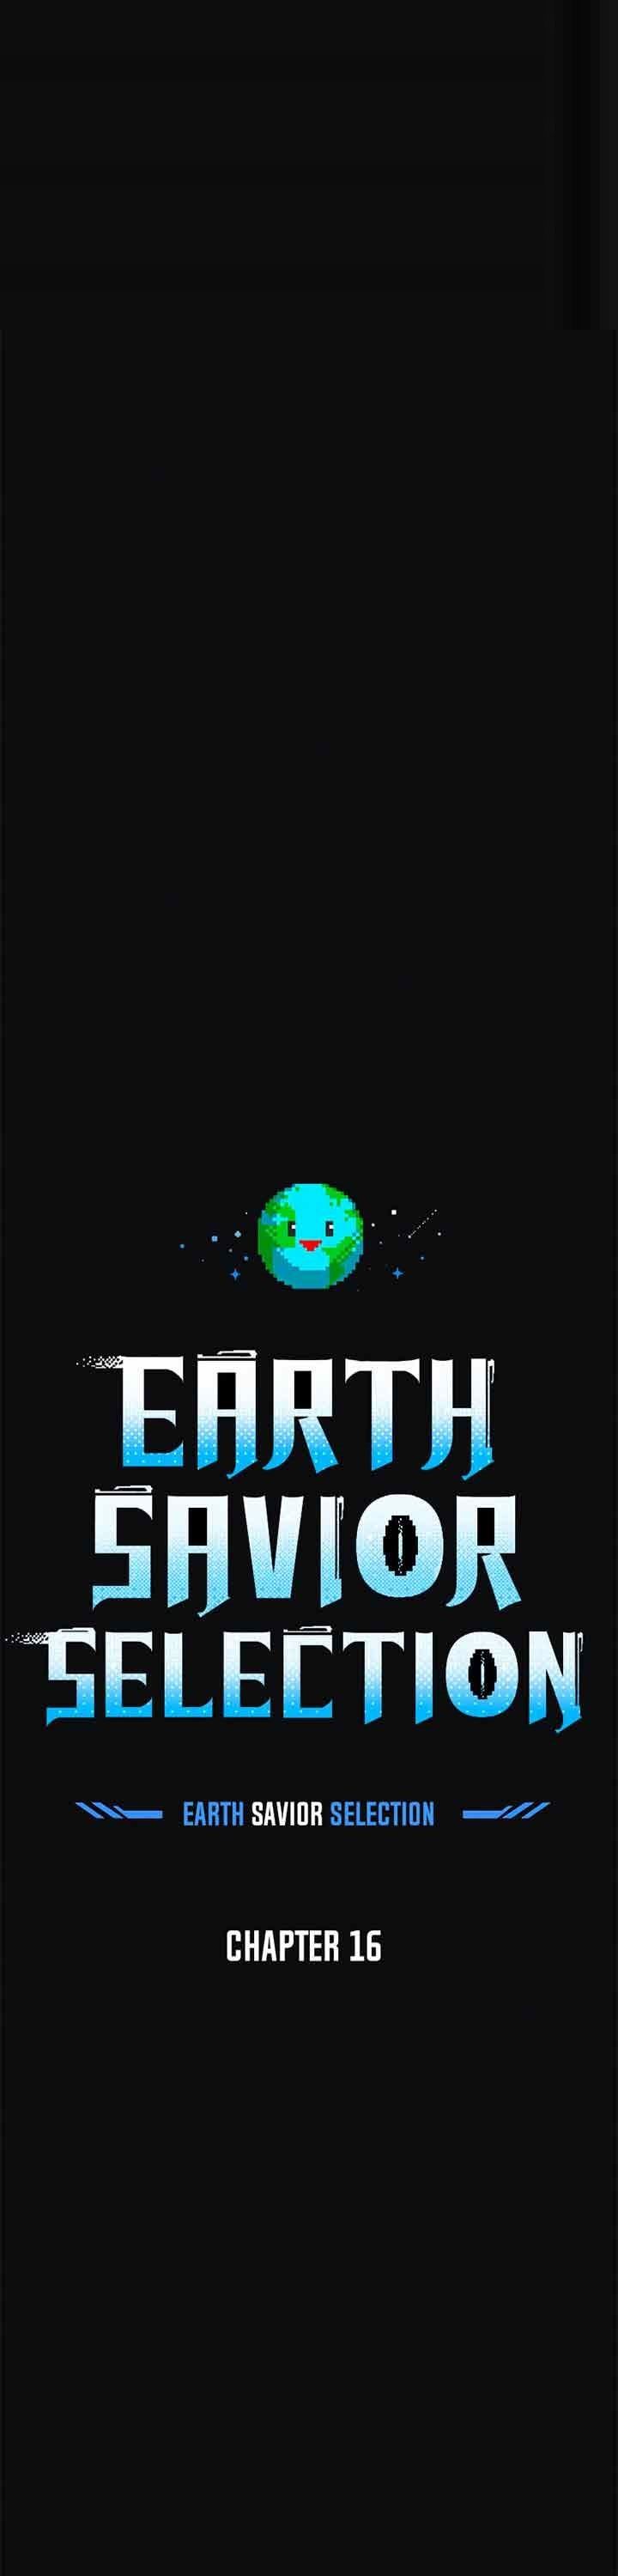 The Earth Savior Selection Chapter 16